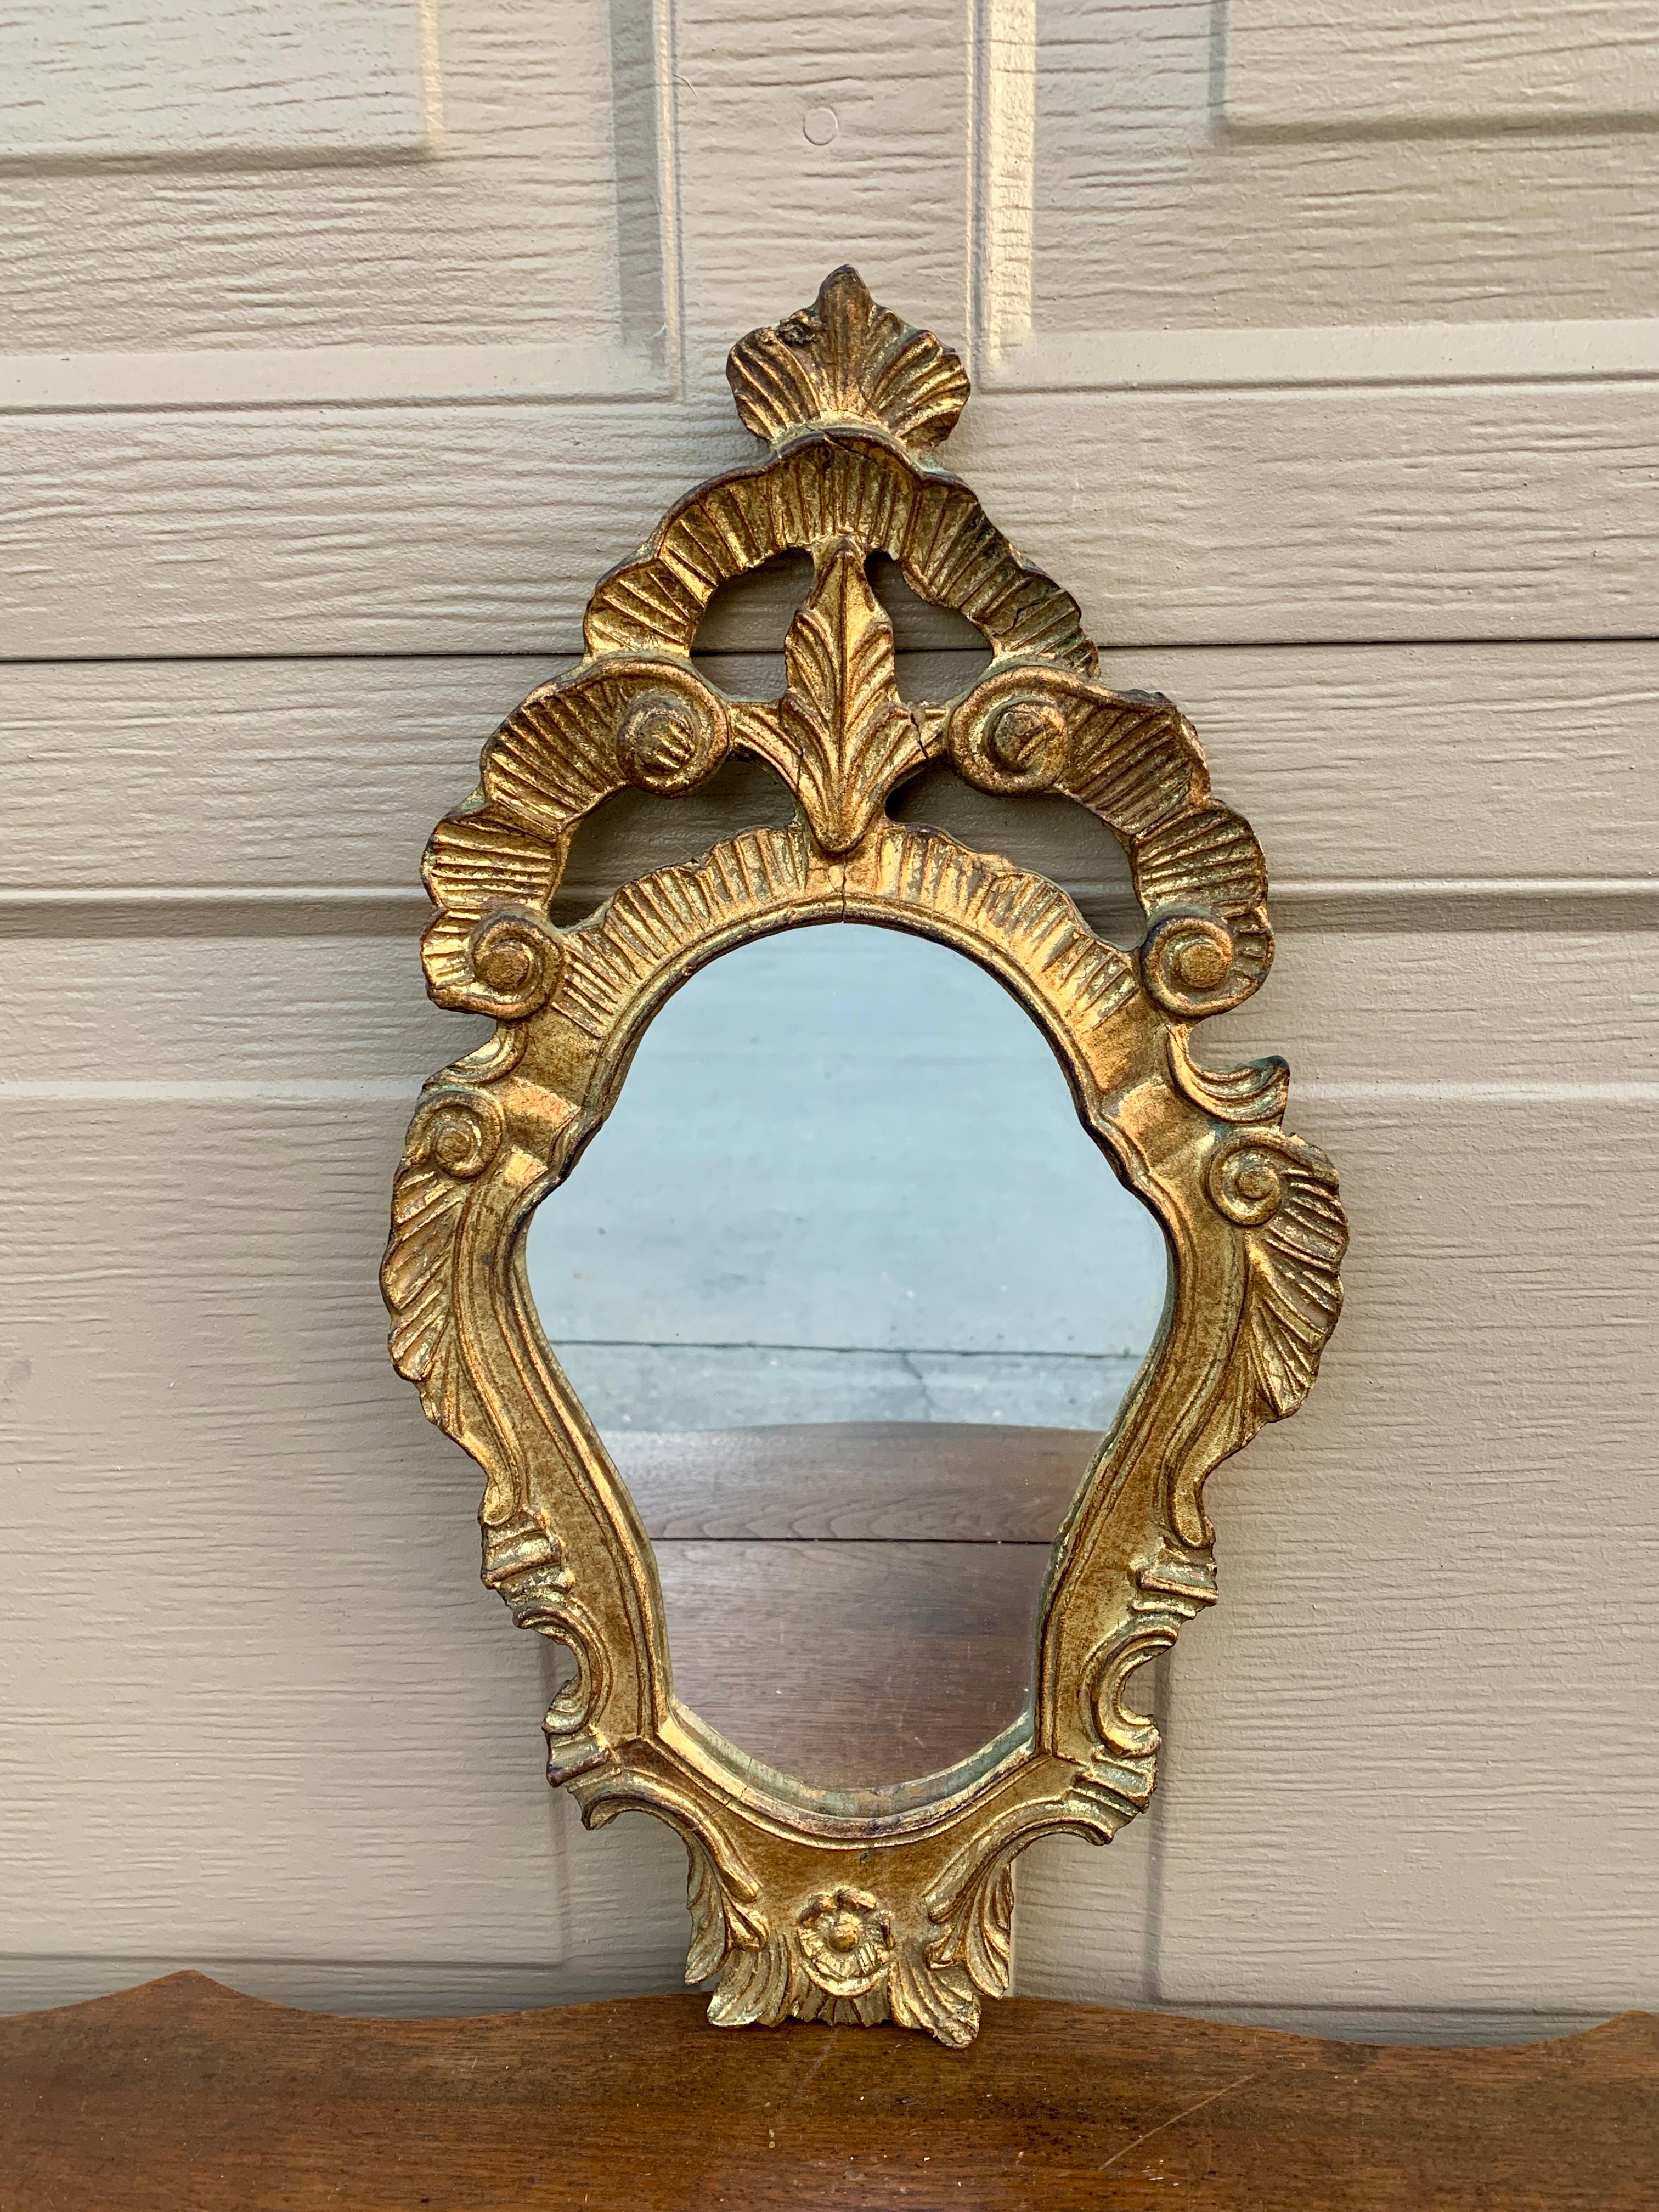 Magnifique miroir encadré de bois doré de style rococo baroque

Italie, Circa 1960

Mesures : 9,25 